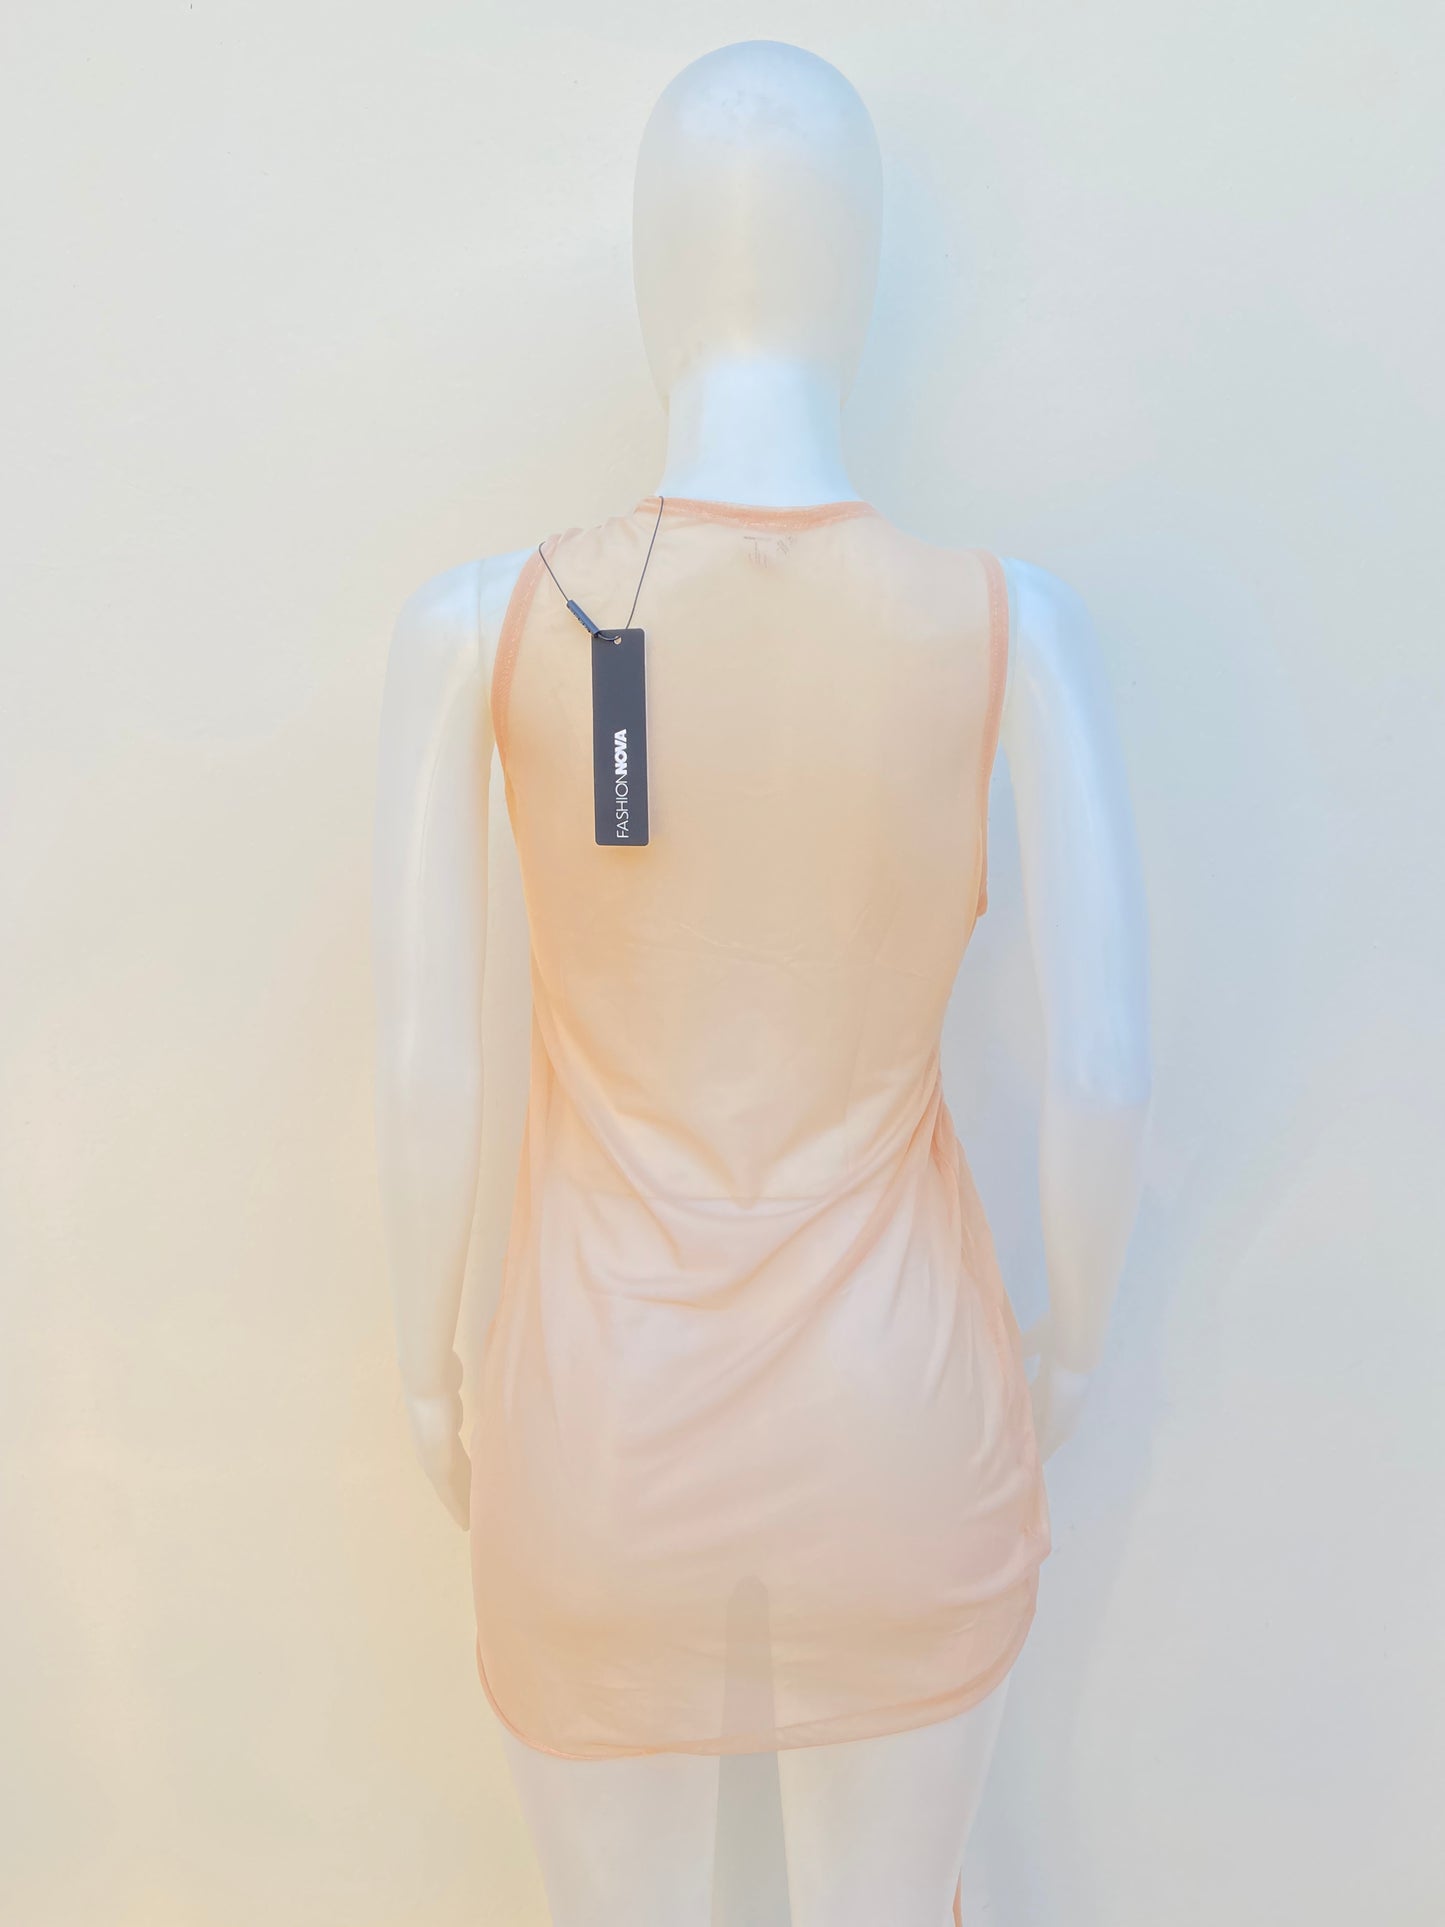 Vestido/ cover up Fashion Nova original color crema ( mocha ), con lazo ajustable al lado,transparente.